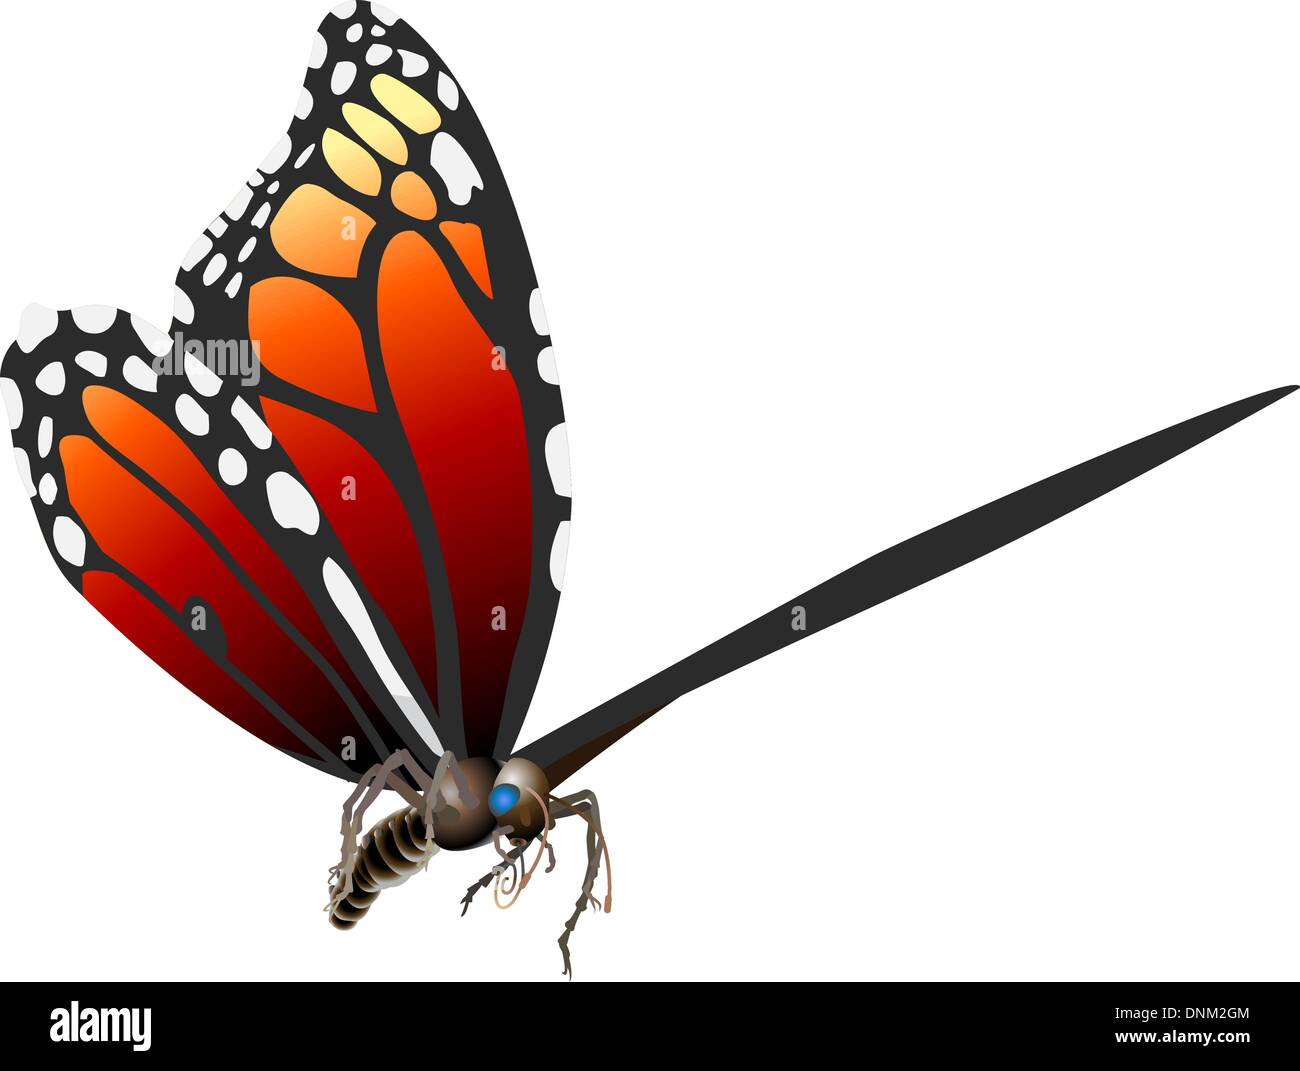 Ein Schmetterling. Vektorgrafiken in Adobe Illustrator 8 EPS-Format. Kann auf jede Größe ohne Qualitätsverlust skaliert werden. Stock Vektor